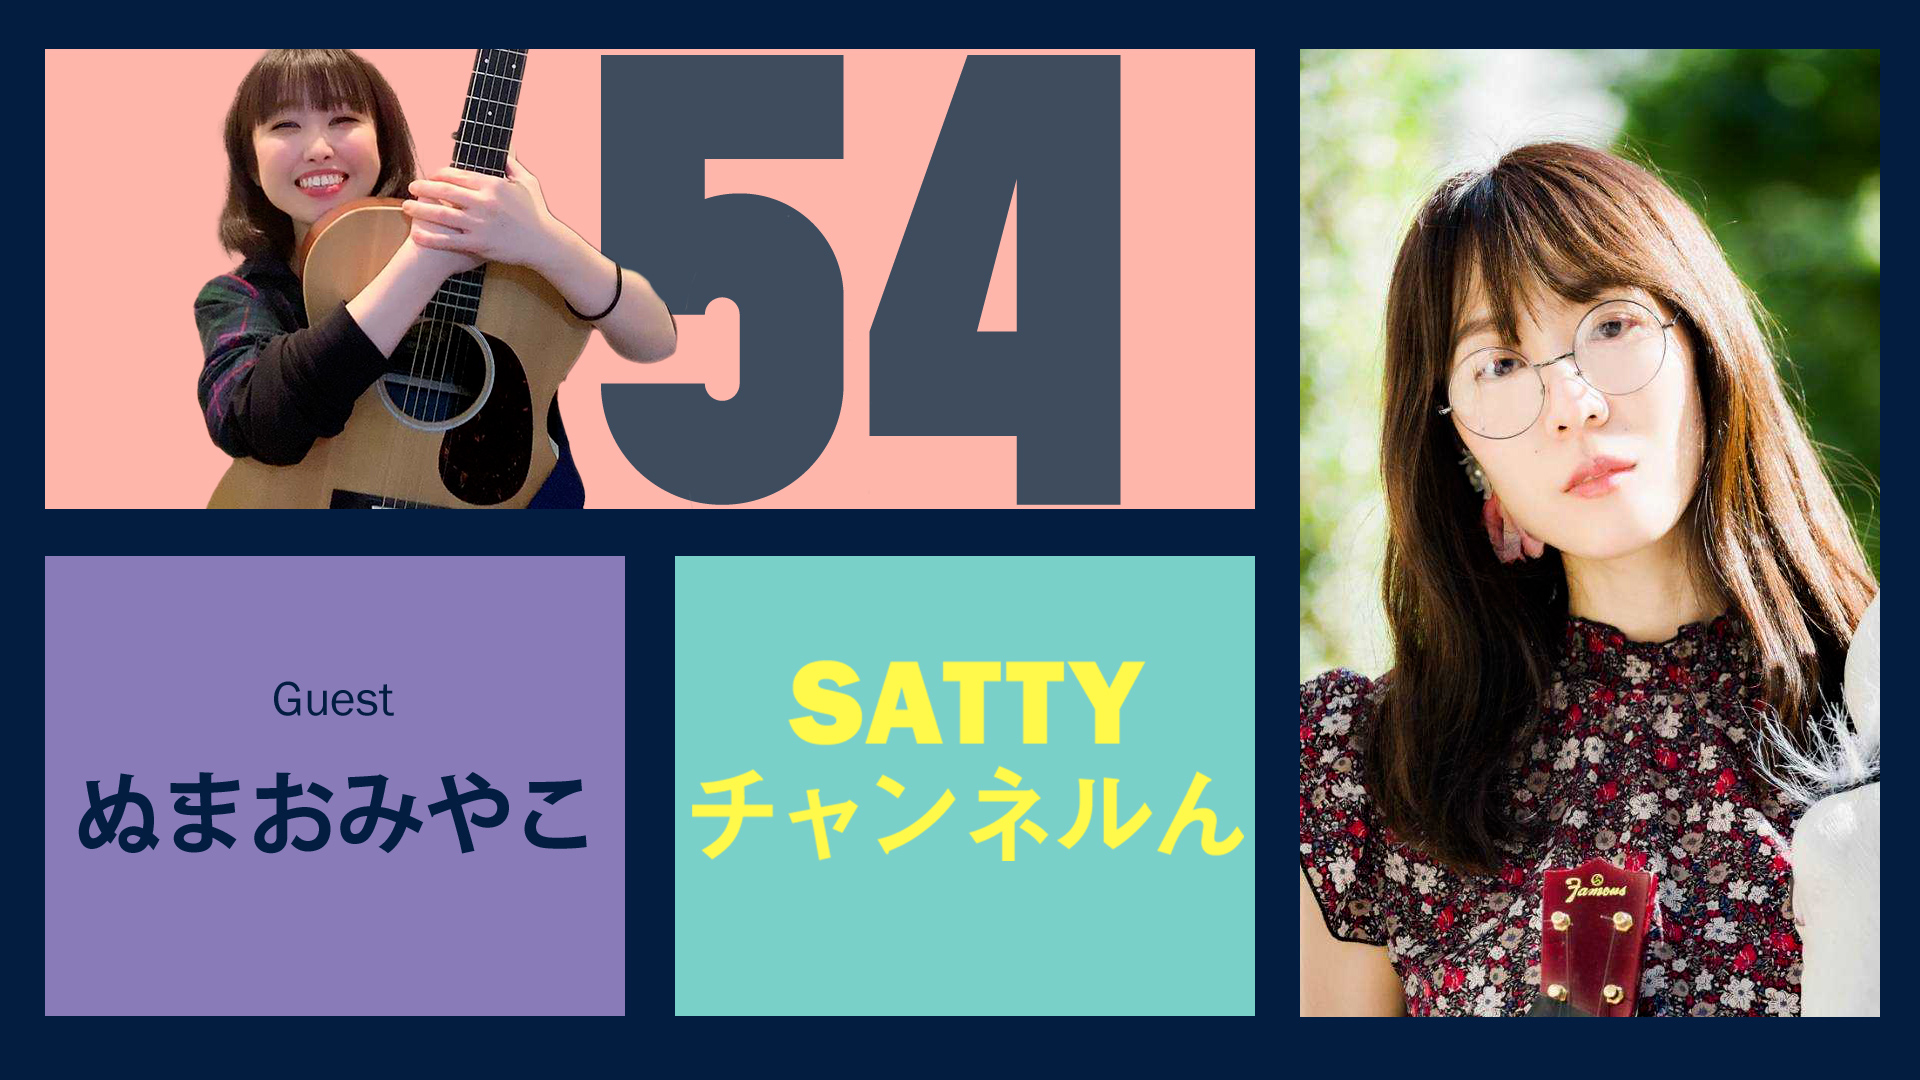 Guest ぬまおみやこさんとトーク! ラジオ「Sattyチャンネルん」#54